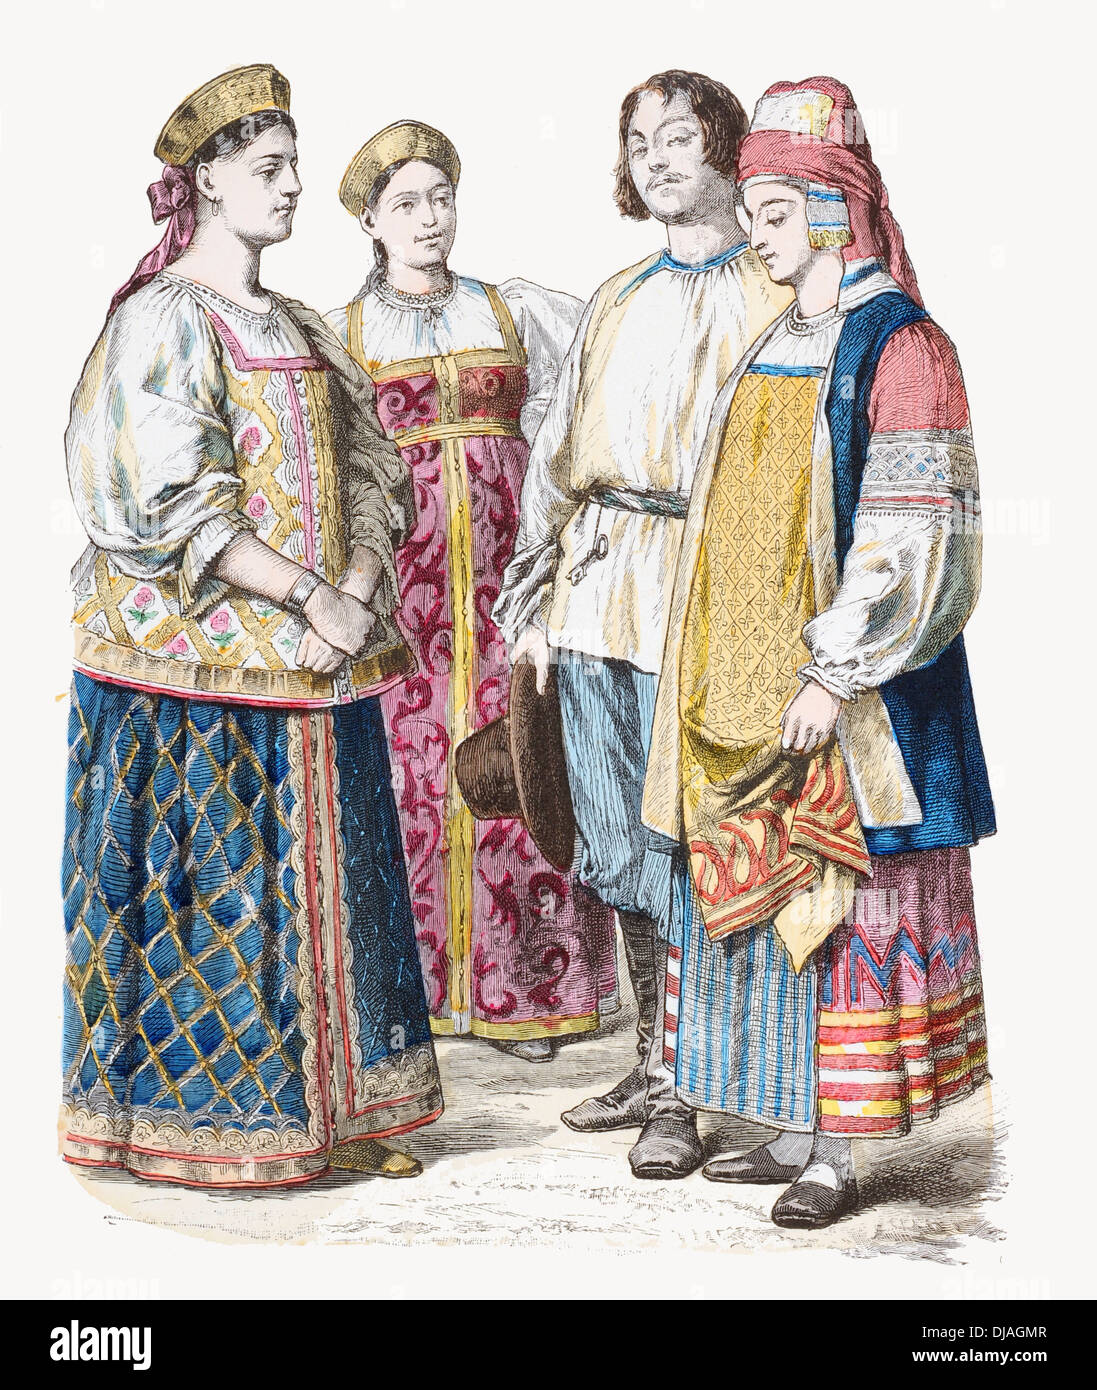 19e siècle XIX Russie gauche à droite Mesdames de Jaroslaw, Tvier Pologne et un couple de tissu de coton à broder brocade kaluga Banque D'Images